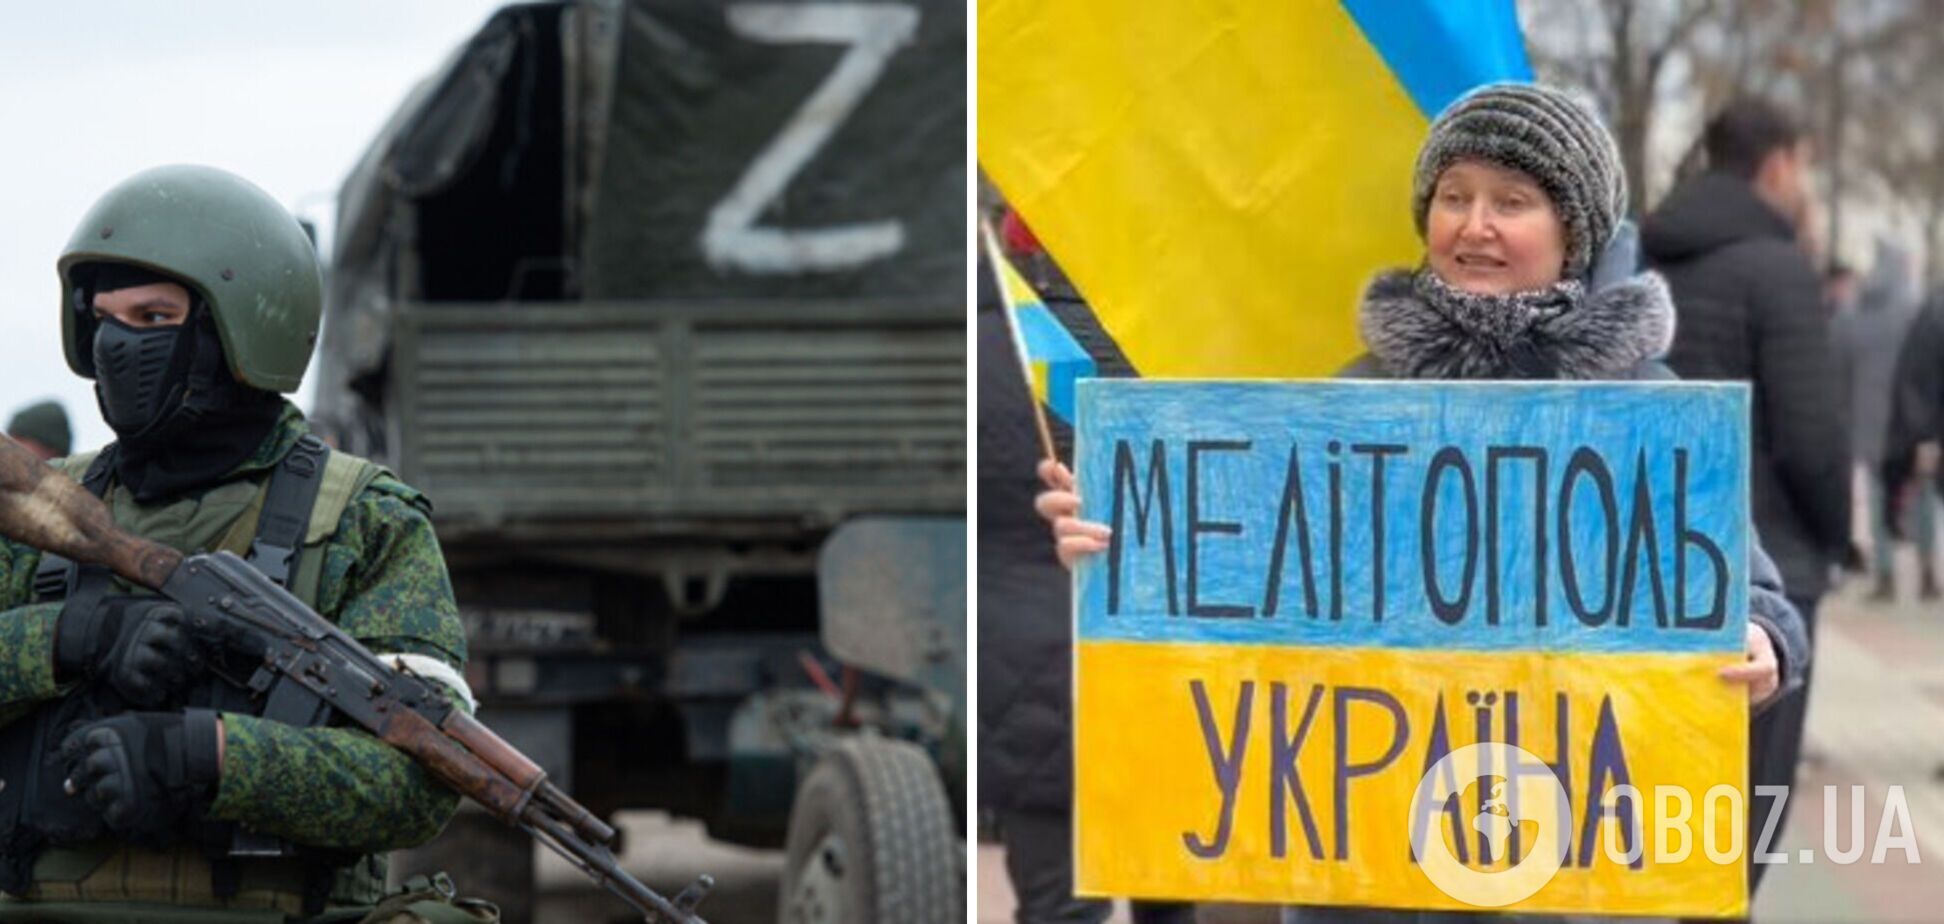 Оккупанты собирают в Мелитополе проплаченный митинг в поддержку РФ: срочно нужна картинка для росТВ